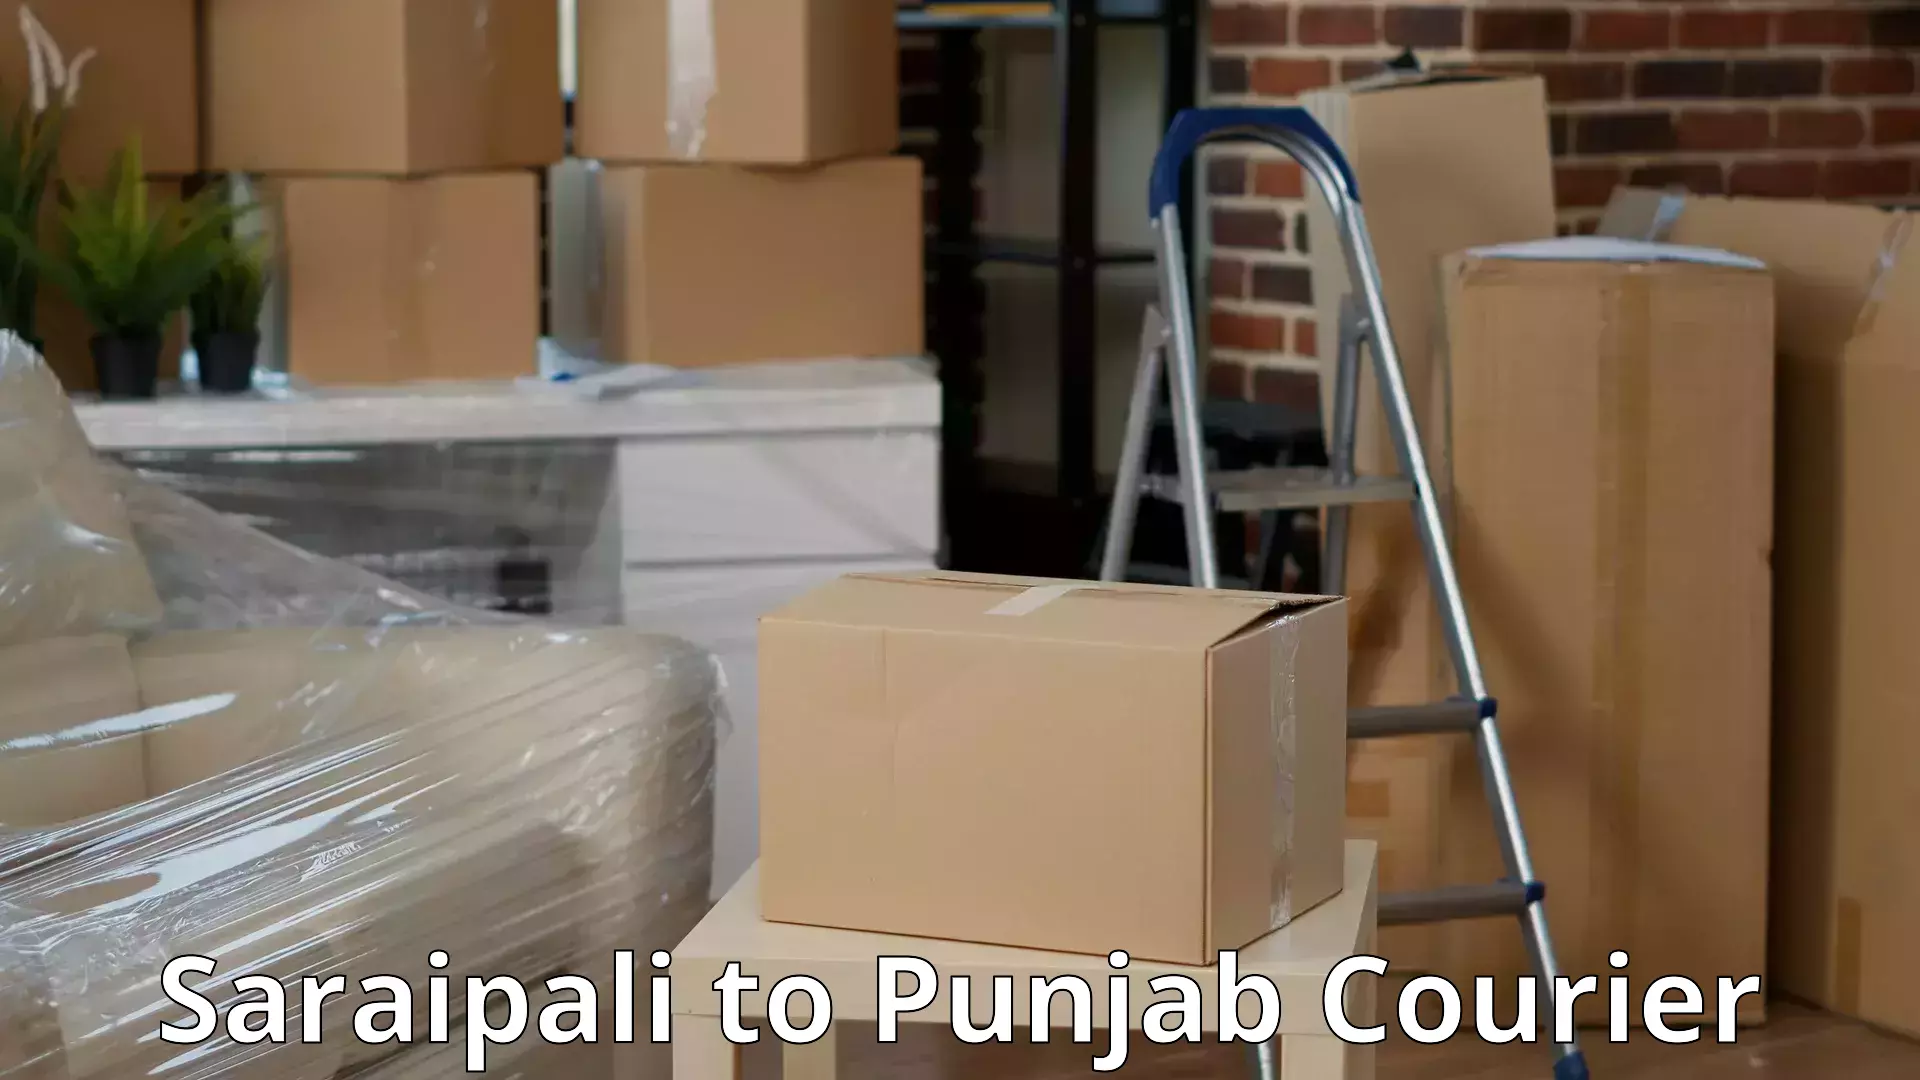 Furniture moving experts Saraipali to Punjab